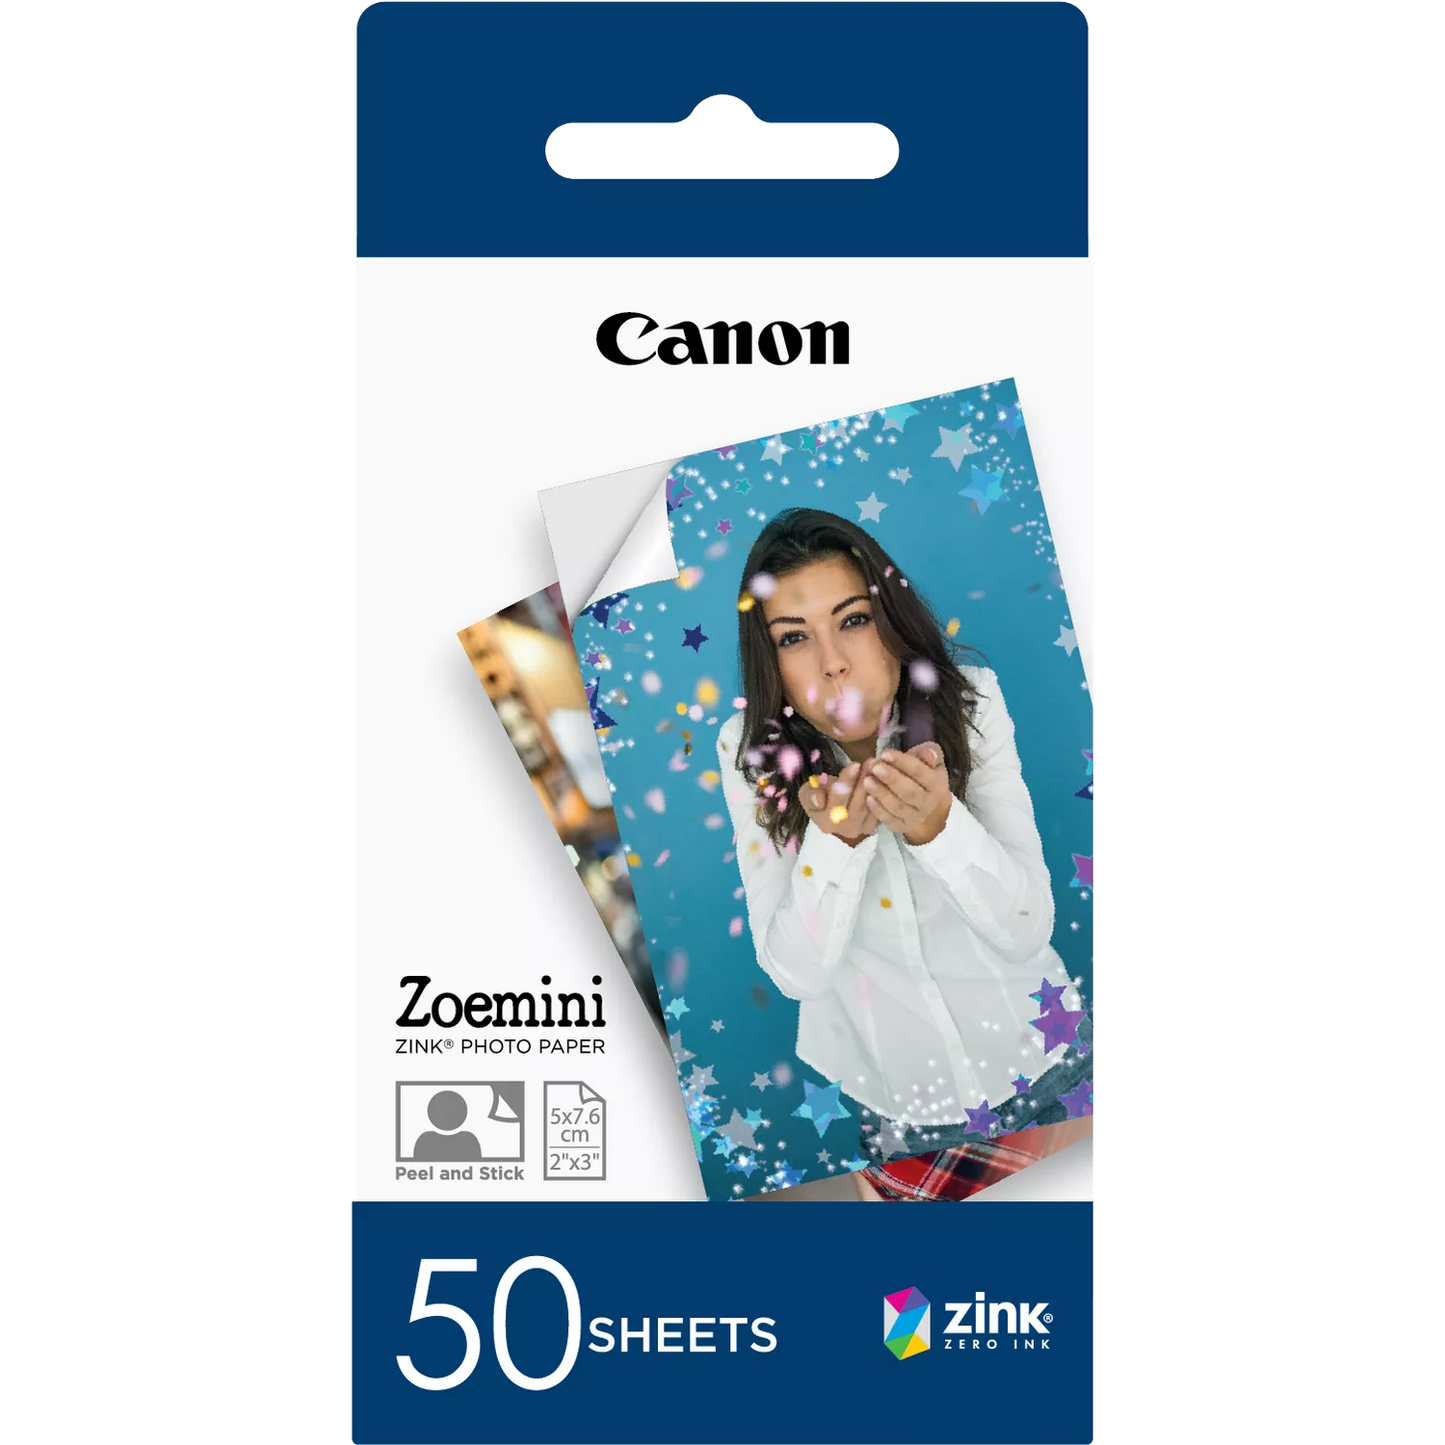 Canon ZINK™ 5 x 7.6 cm Photo Paper x50 sheets